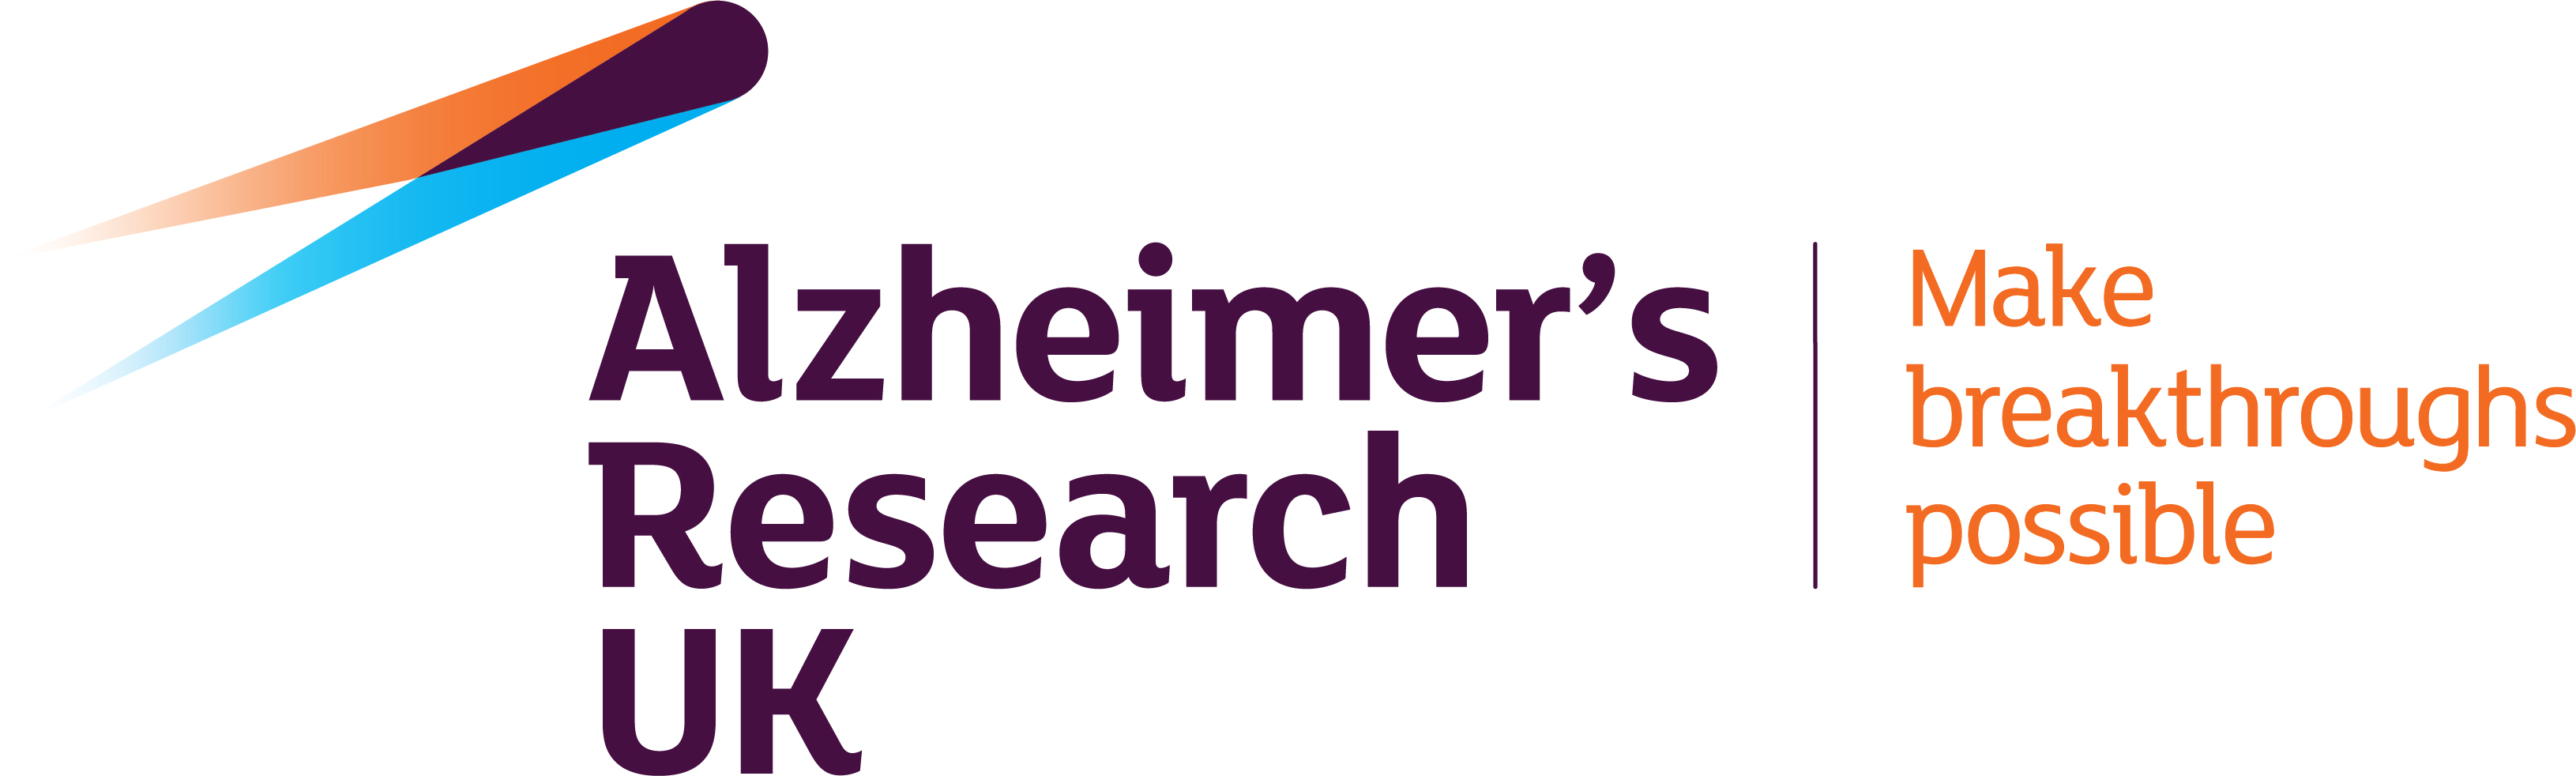 alzheimer's research